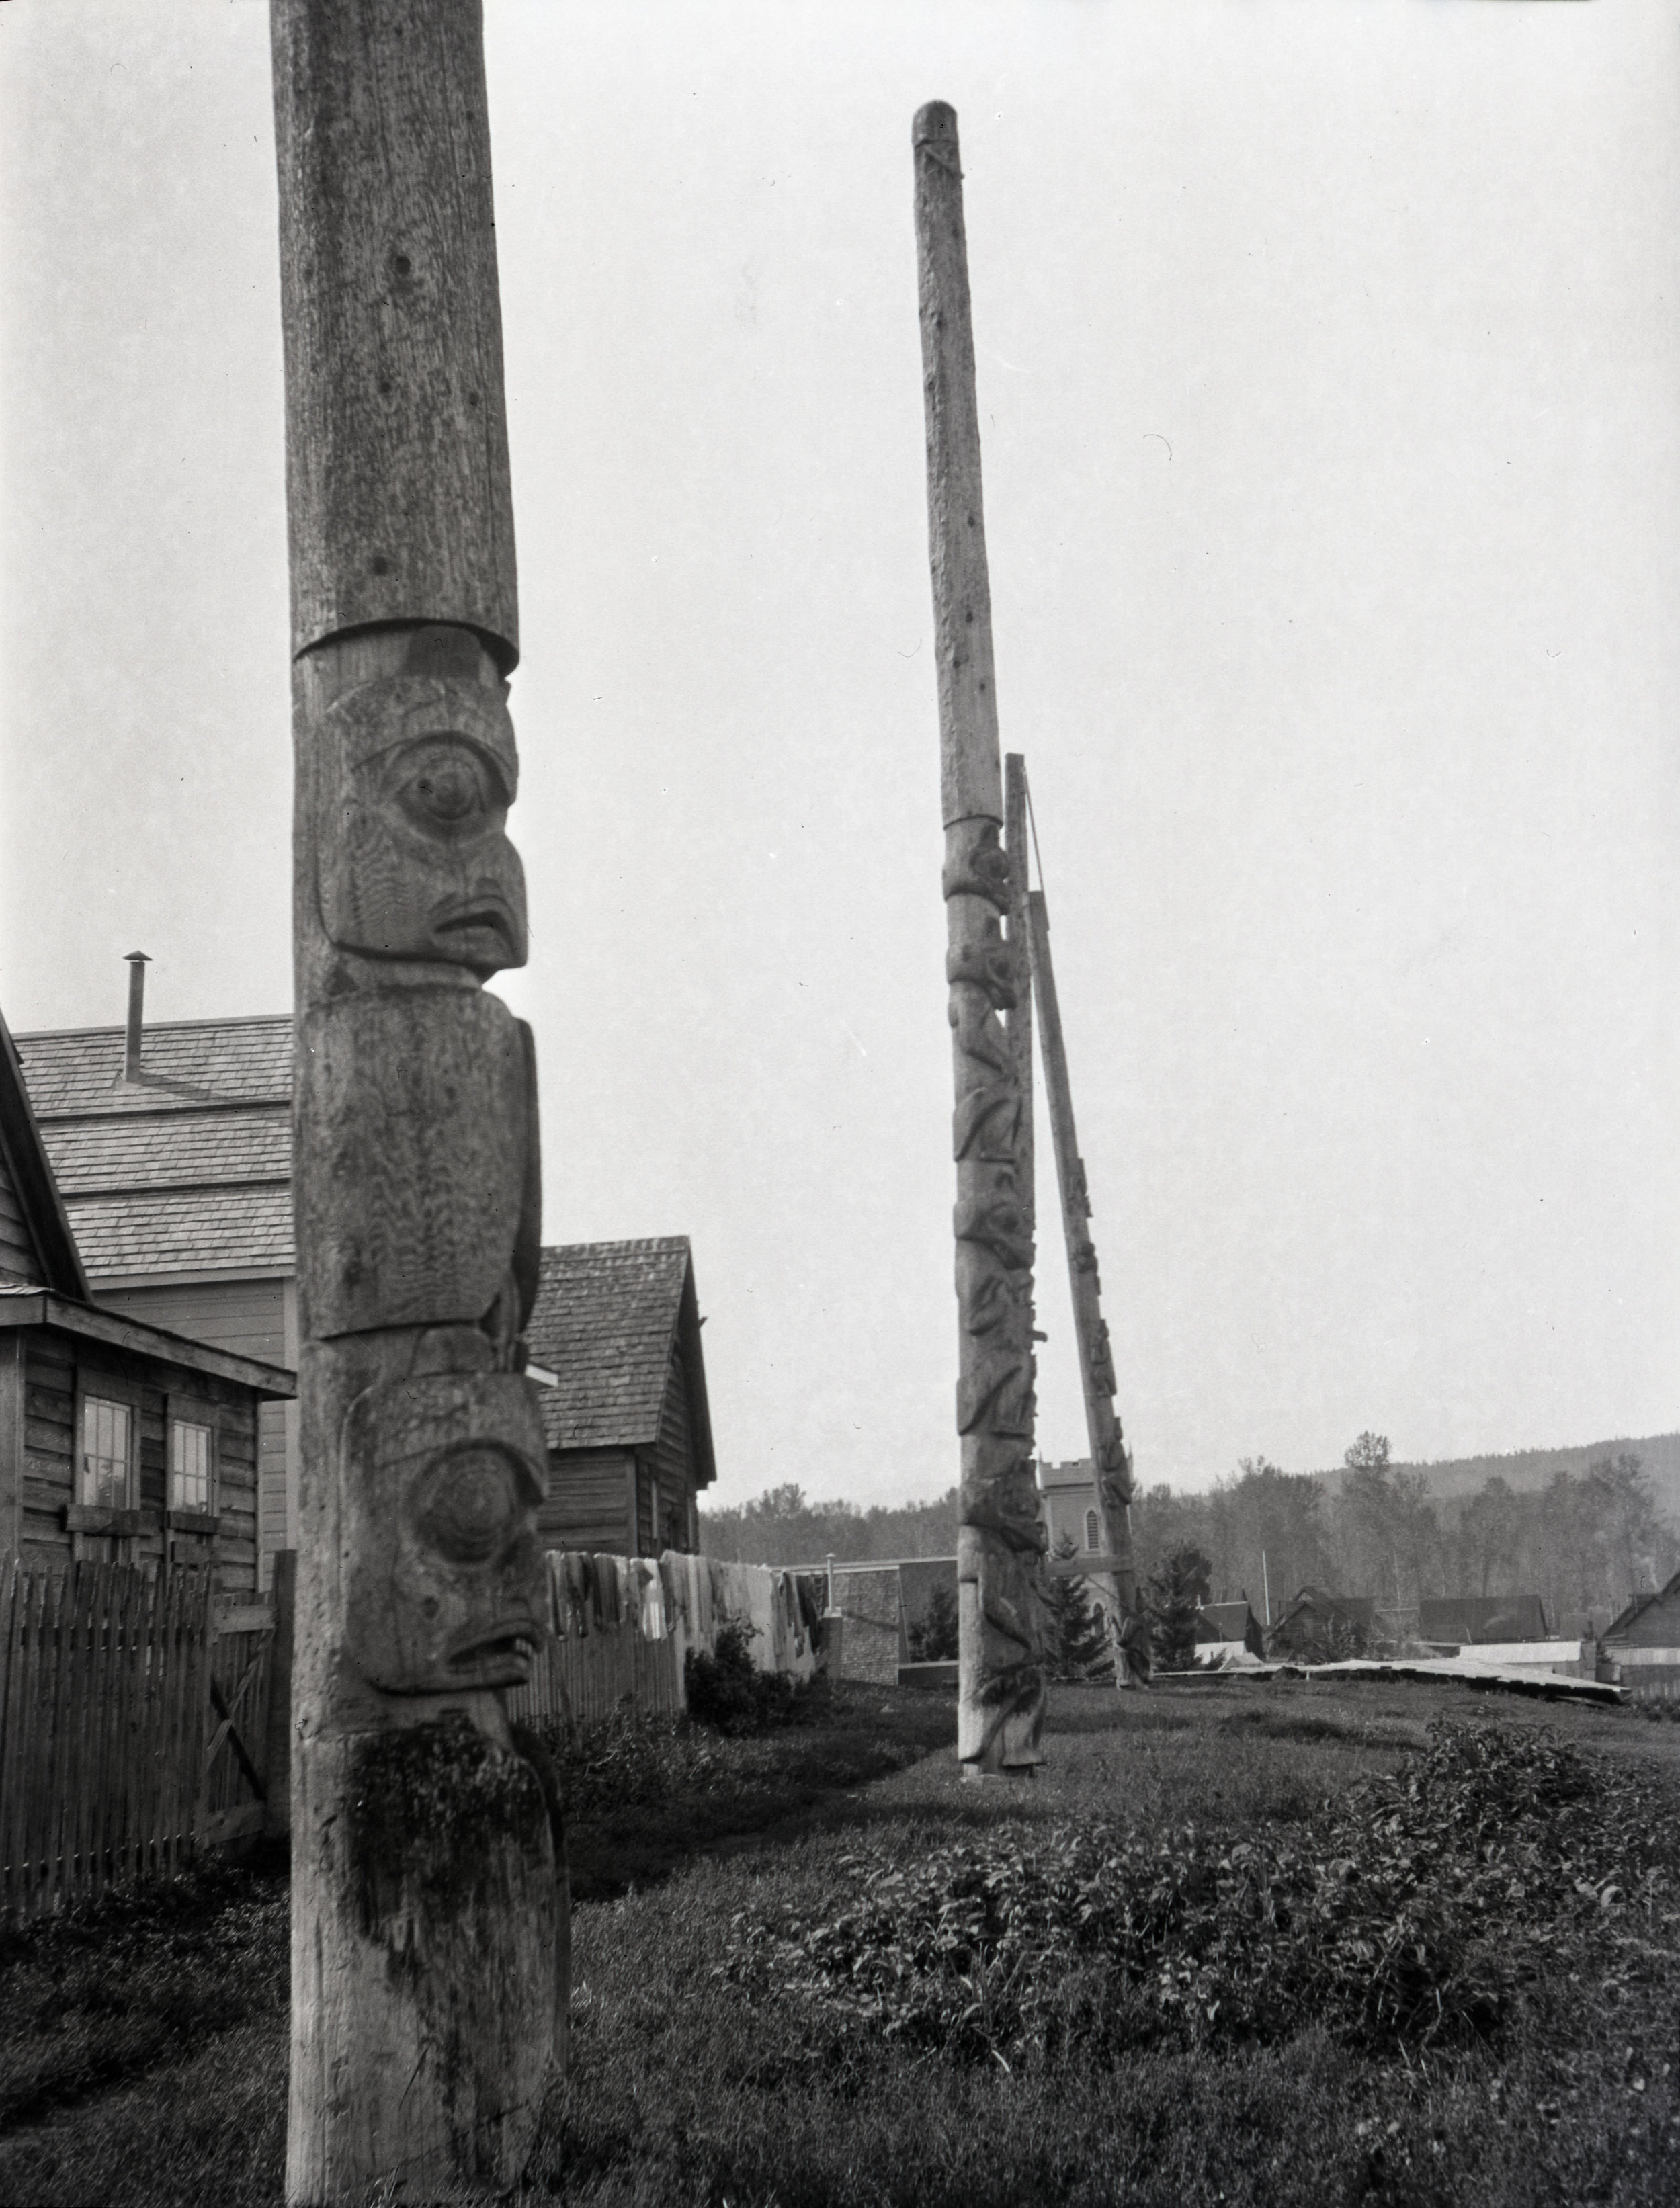  Totem poles at Hazelton, British Columbia 